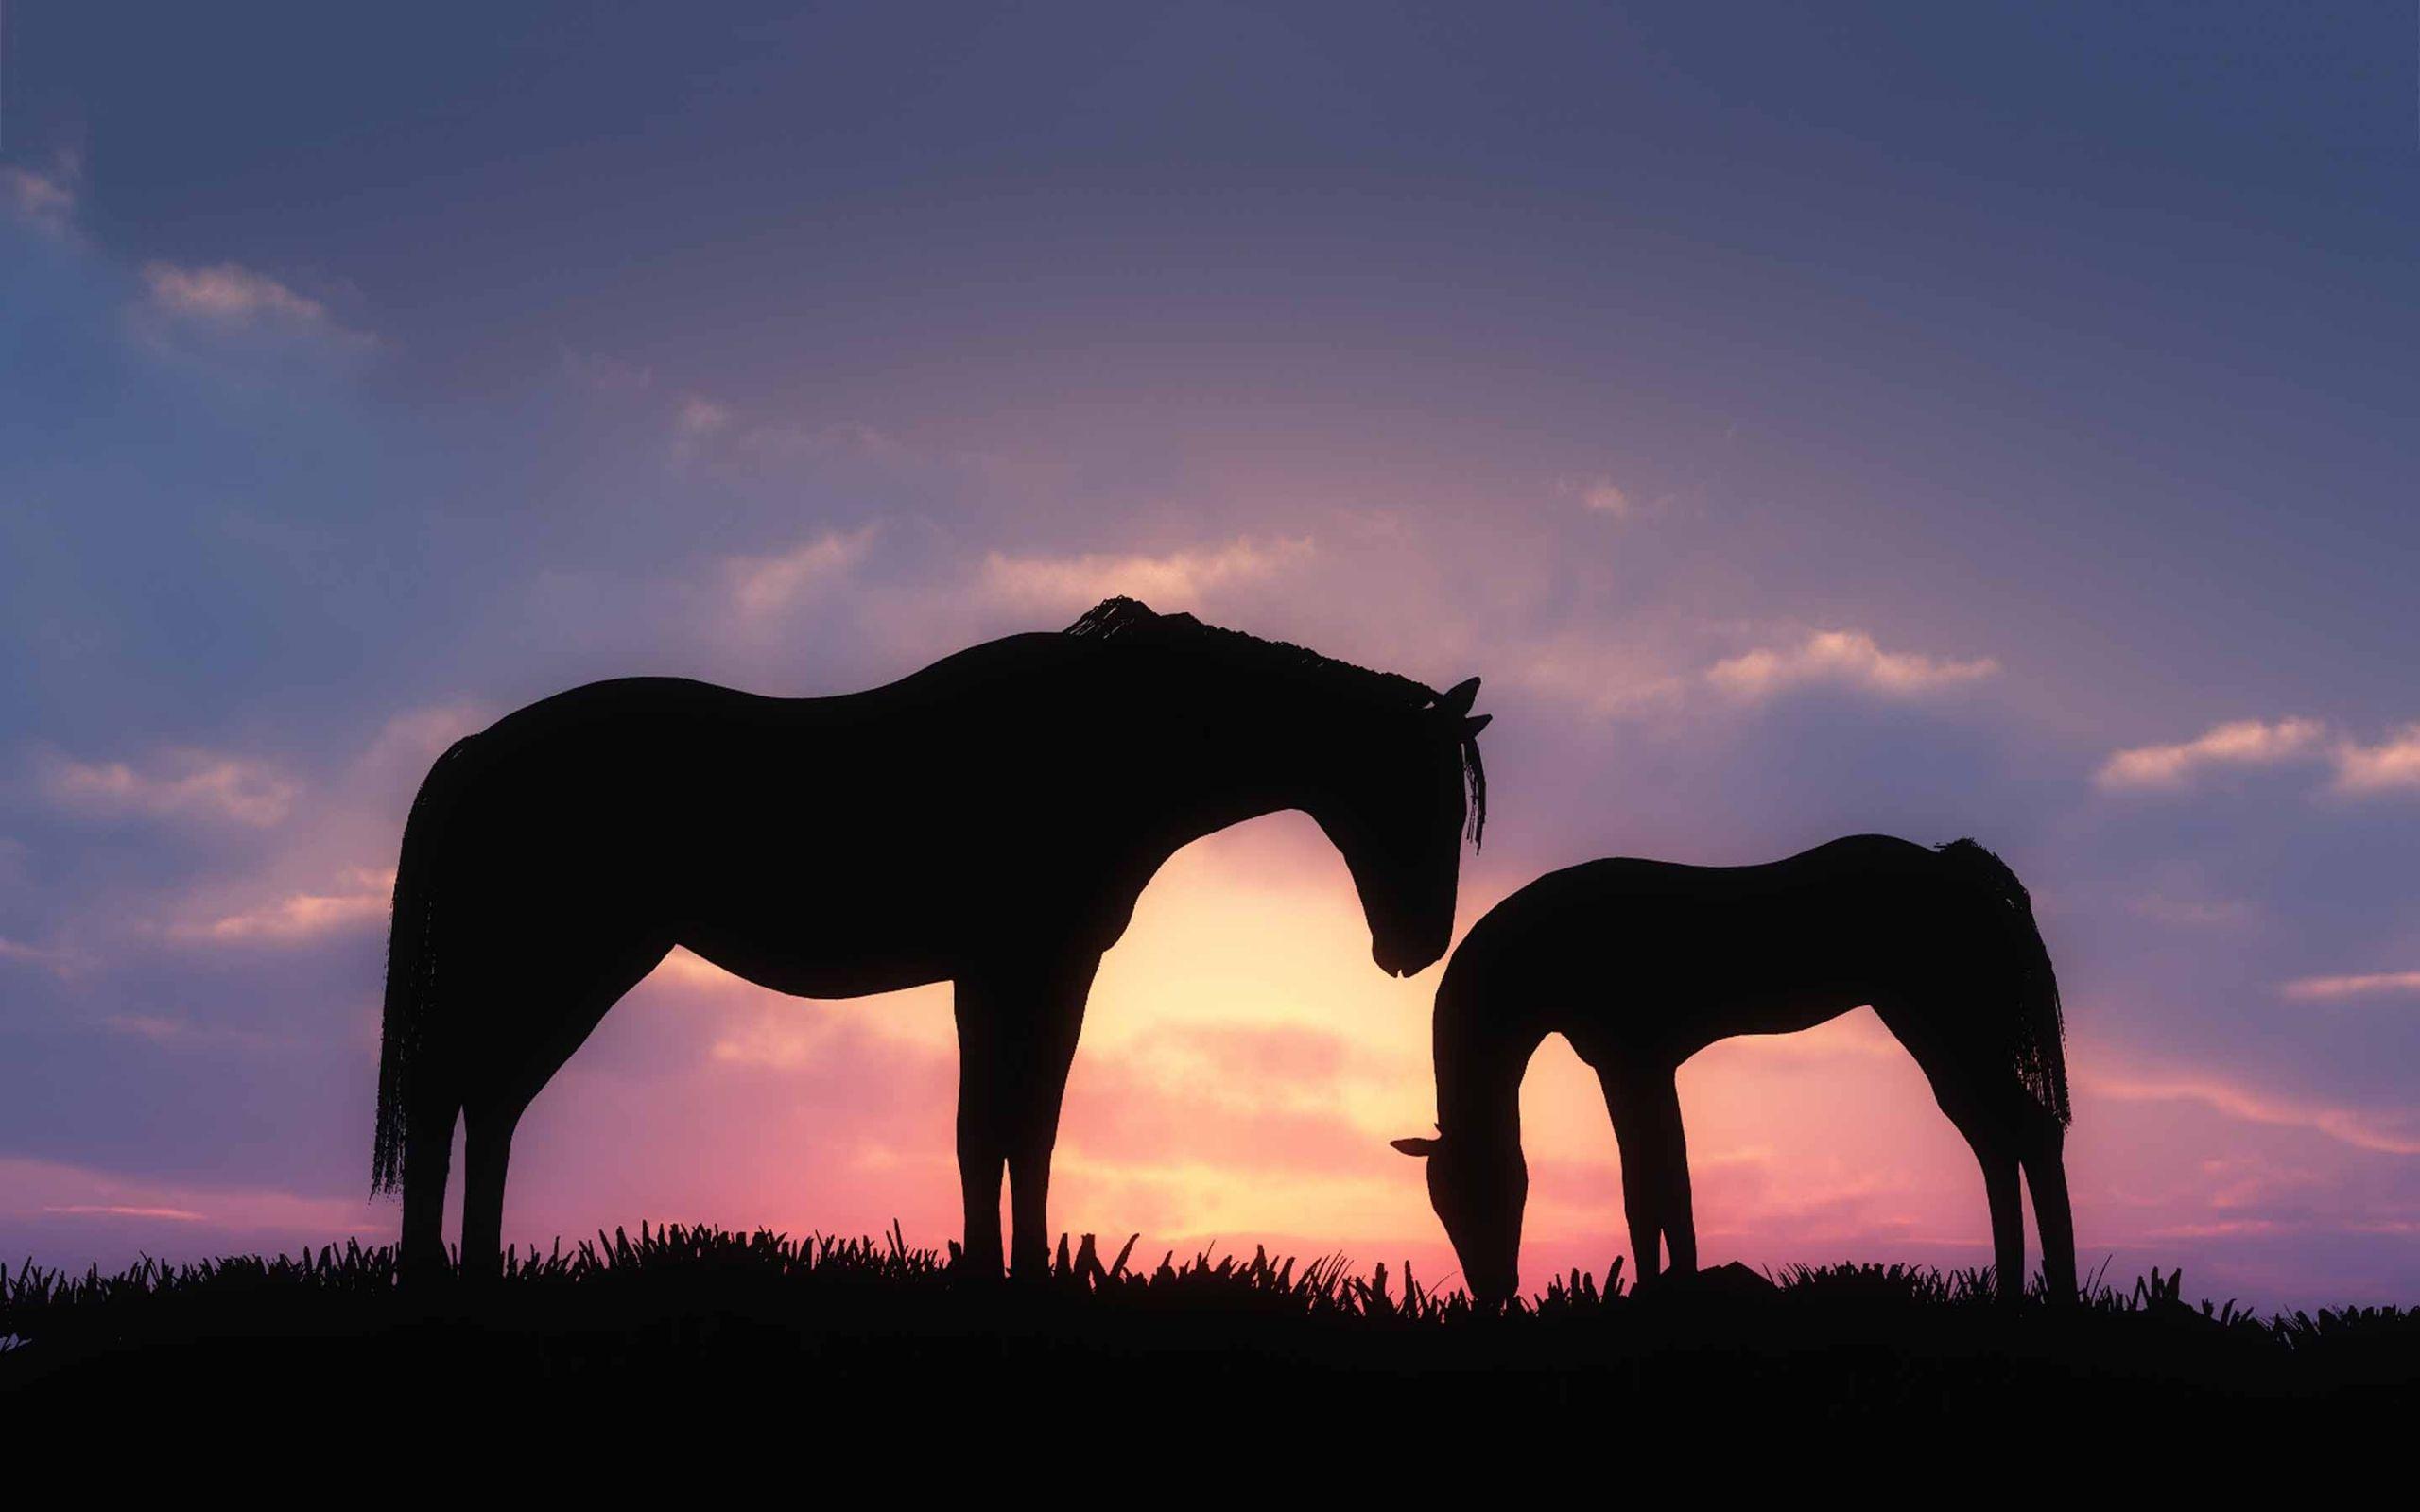 Horses Sunset Photoshop - Free photo on Pixabay - Pixabay